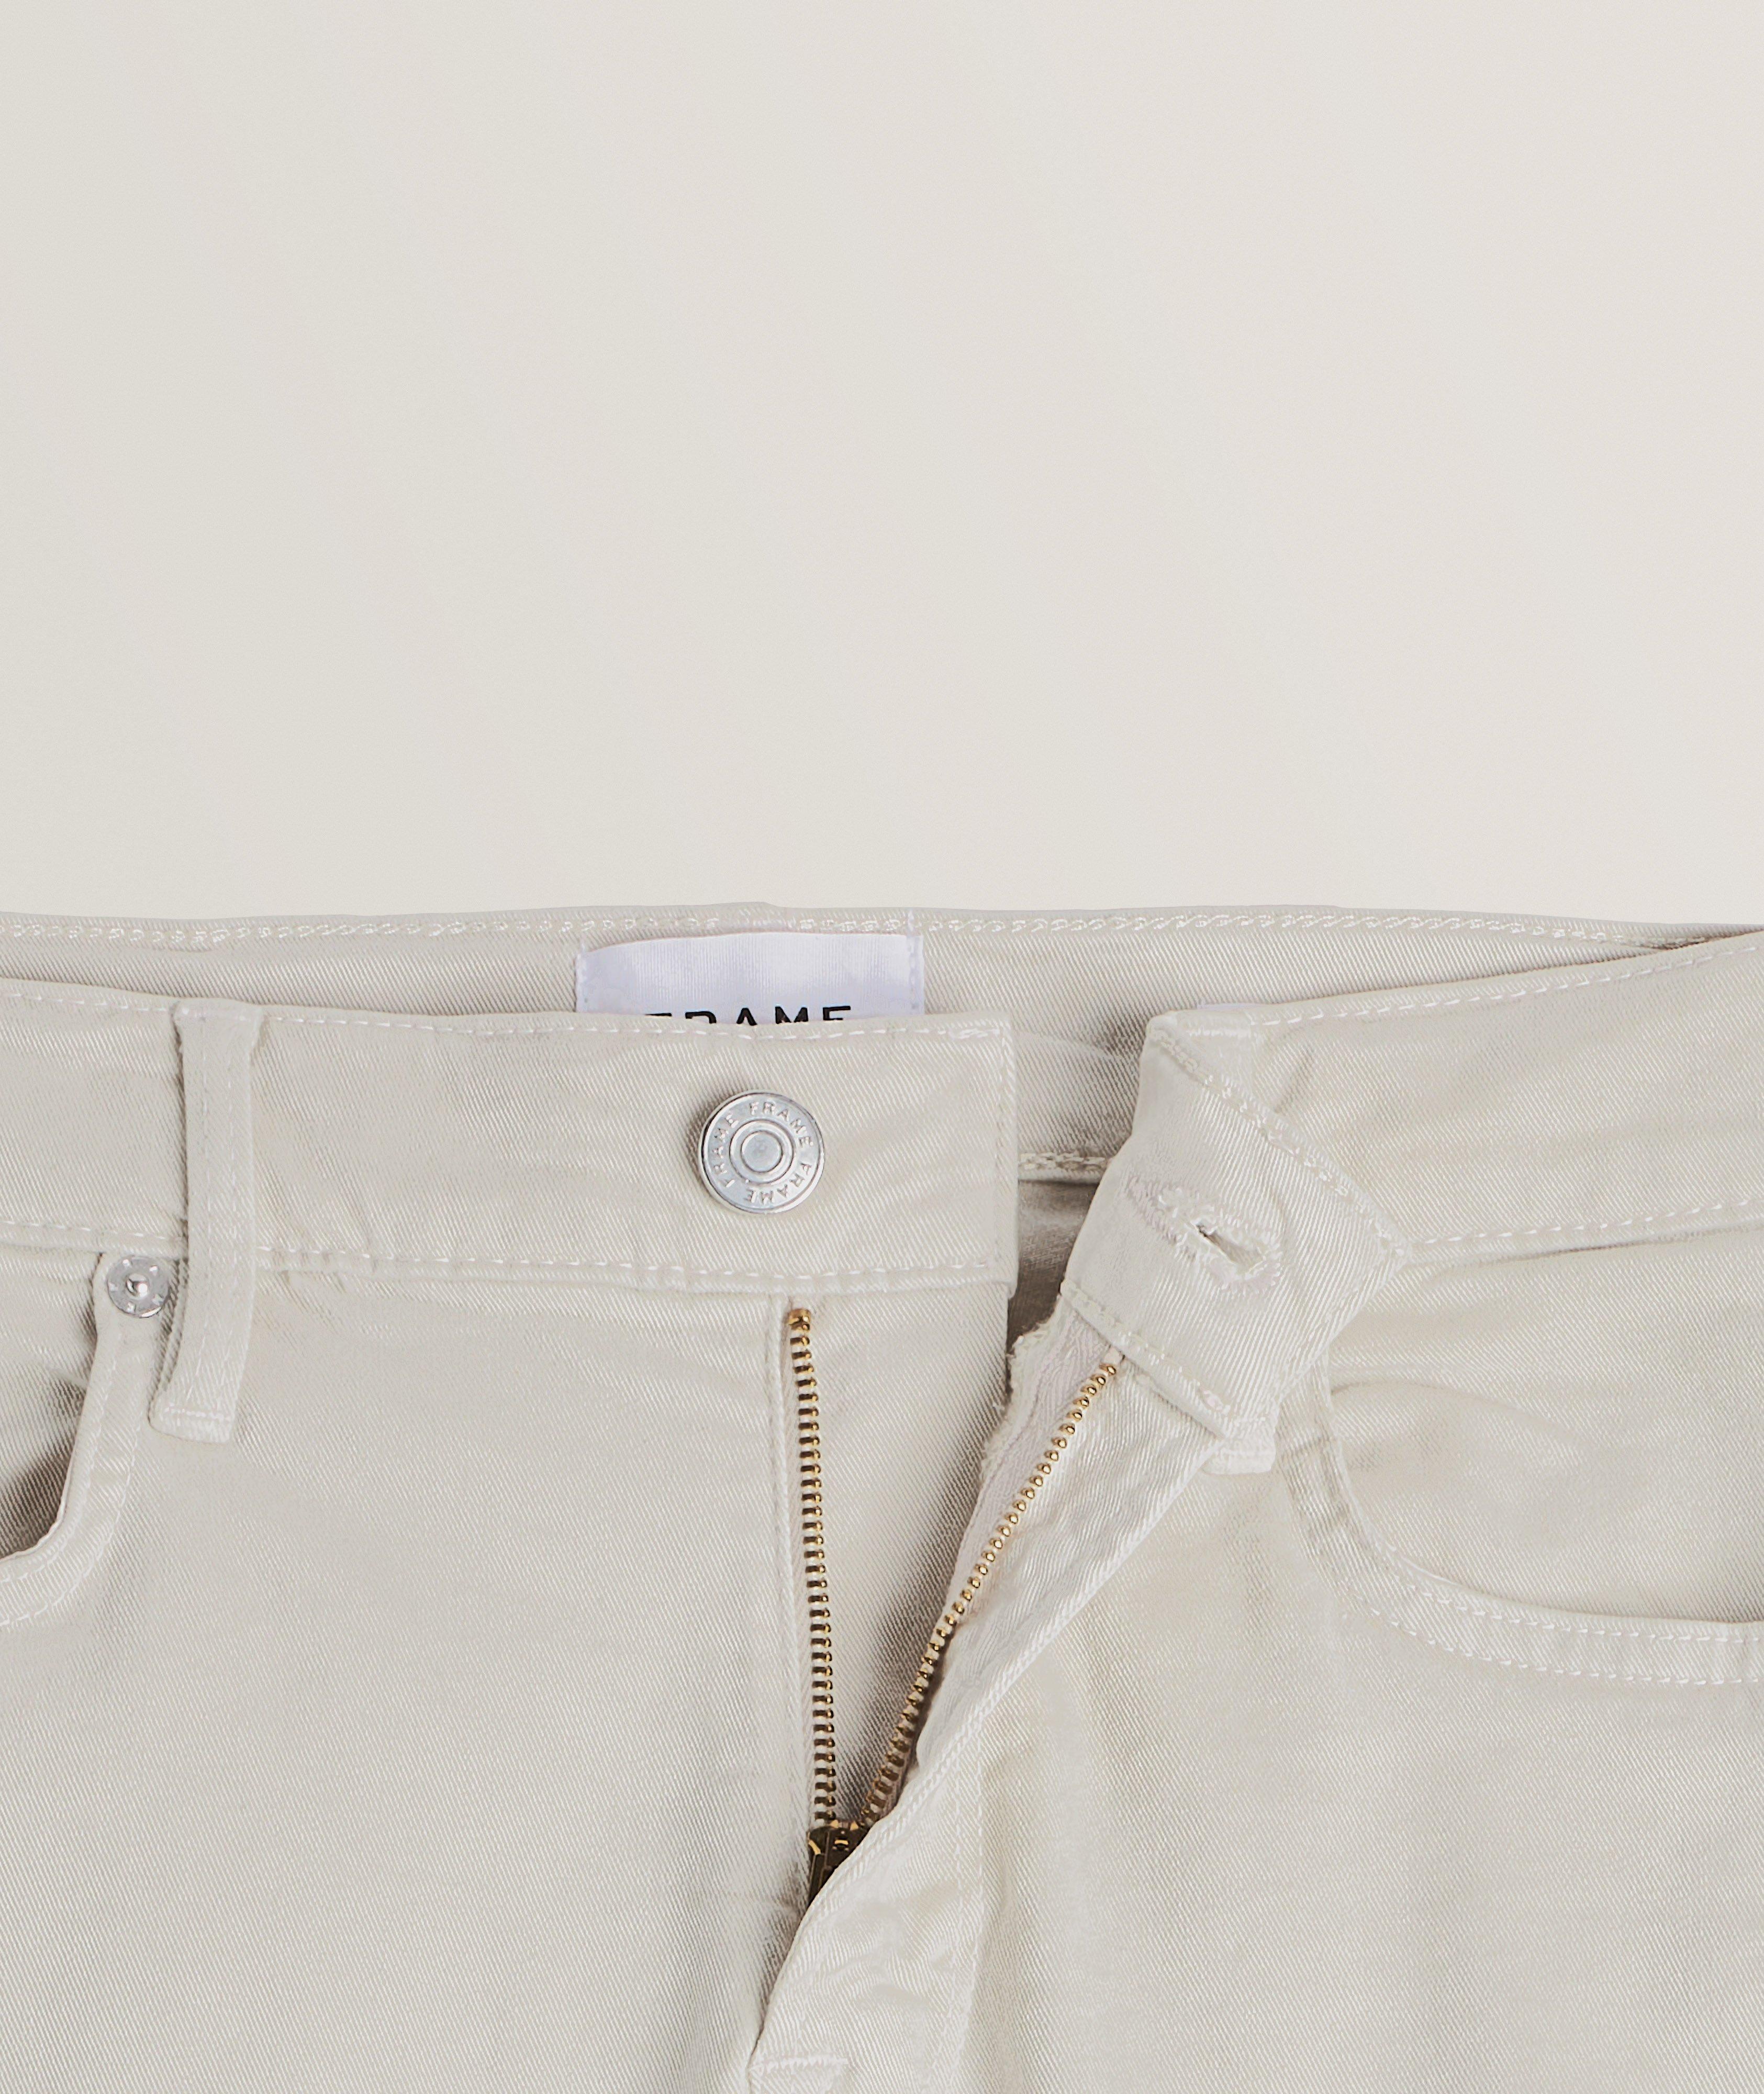 L'Homme Slim-Fit Lyocell-Blend Jeans image 1